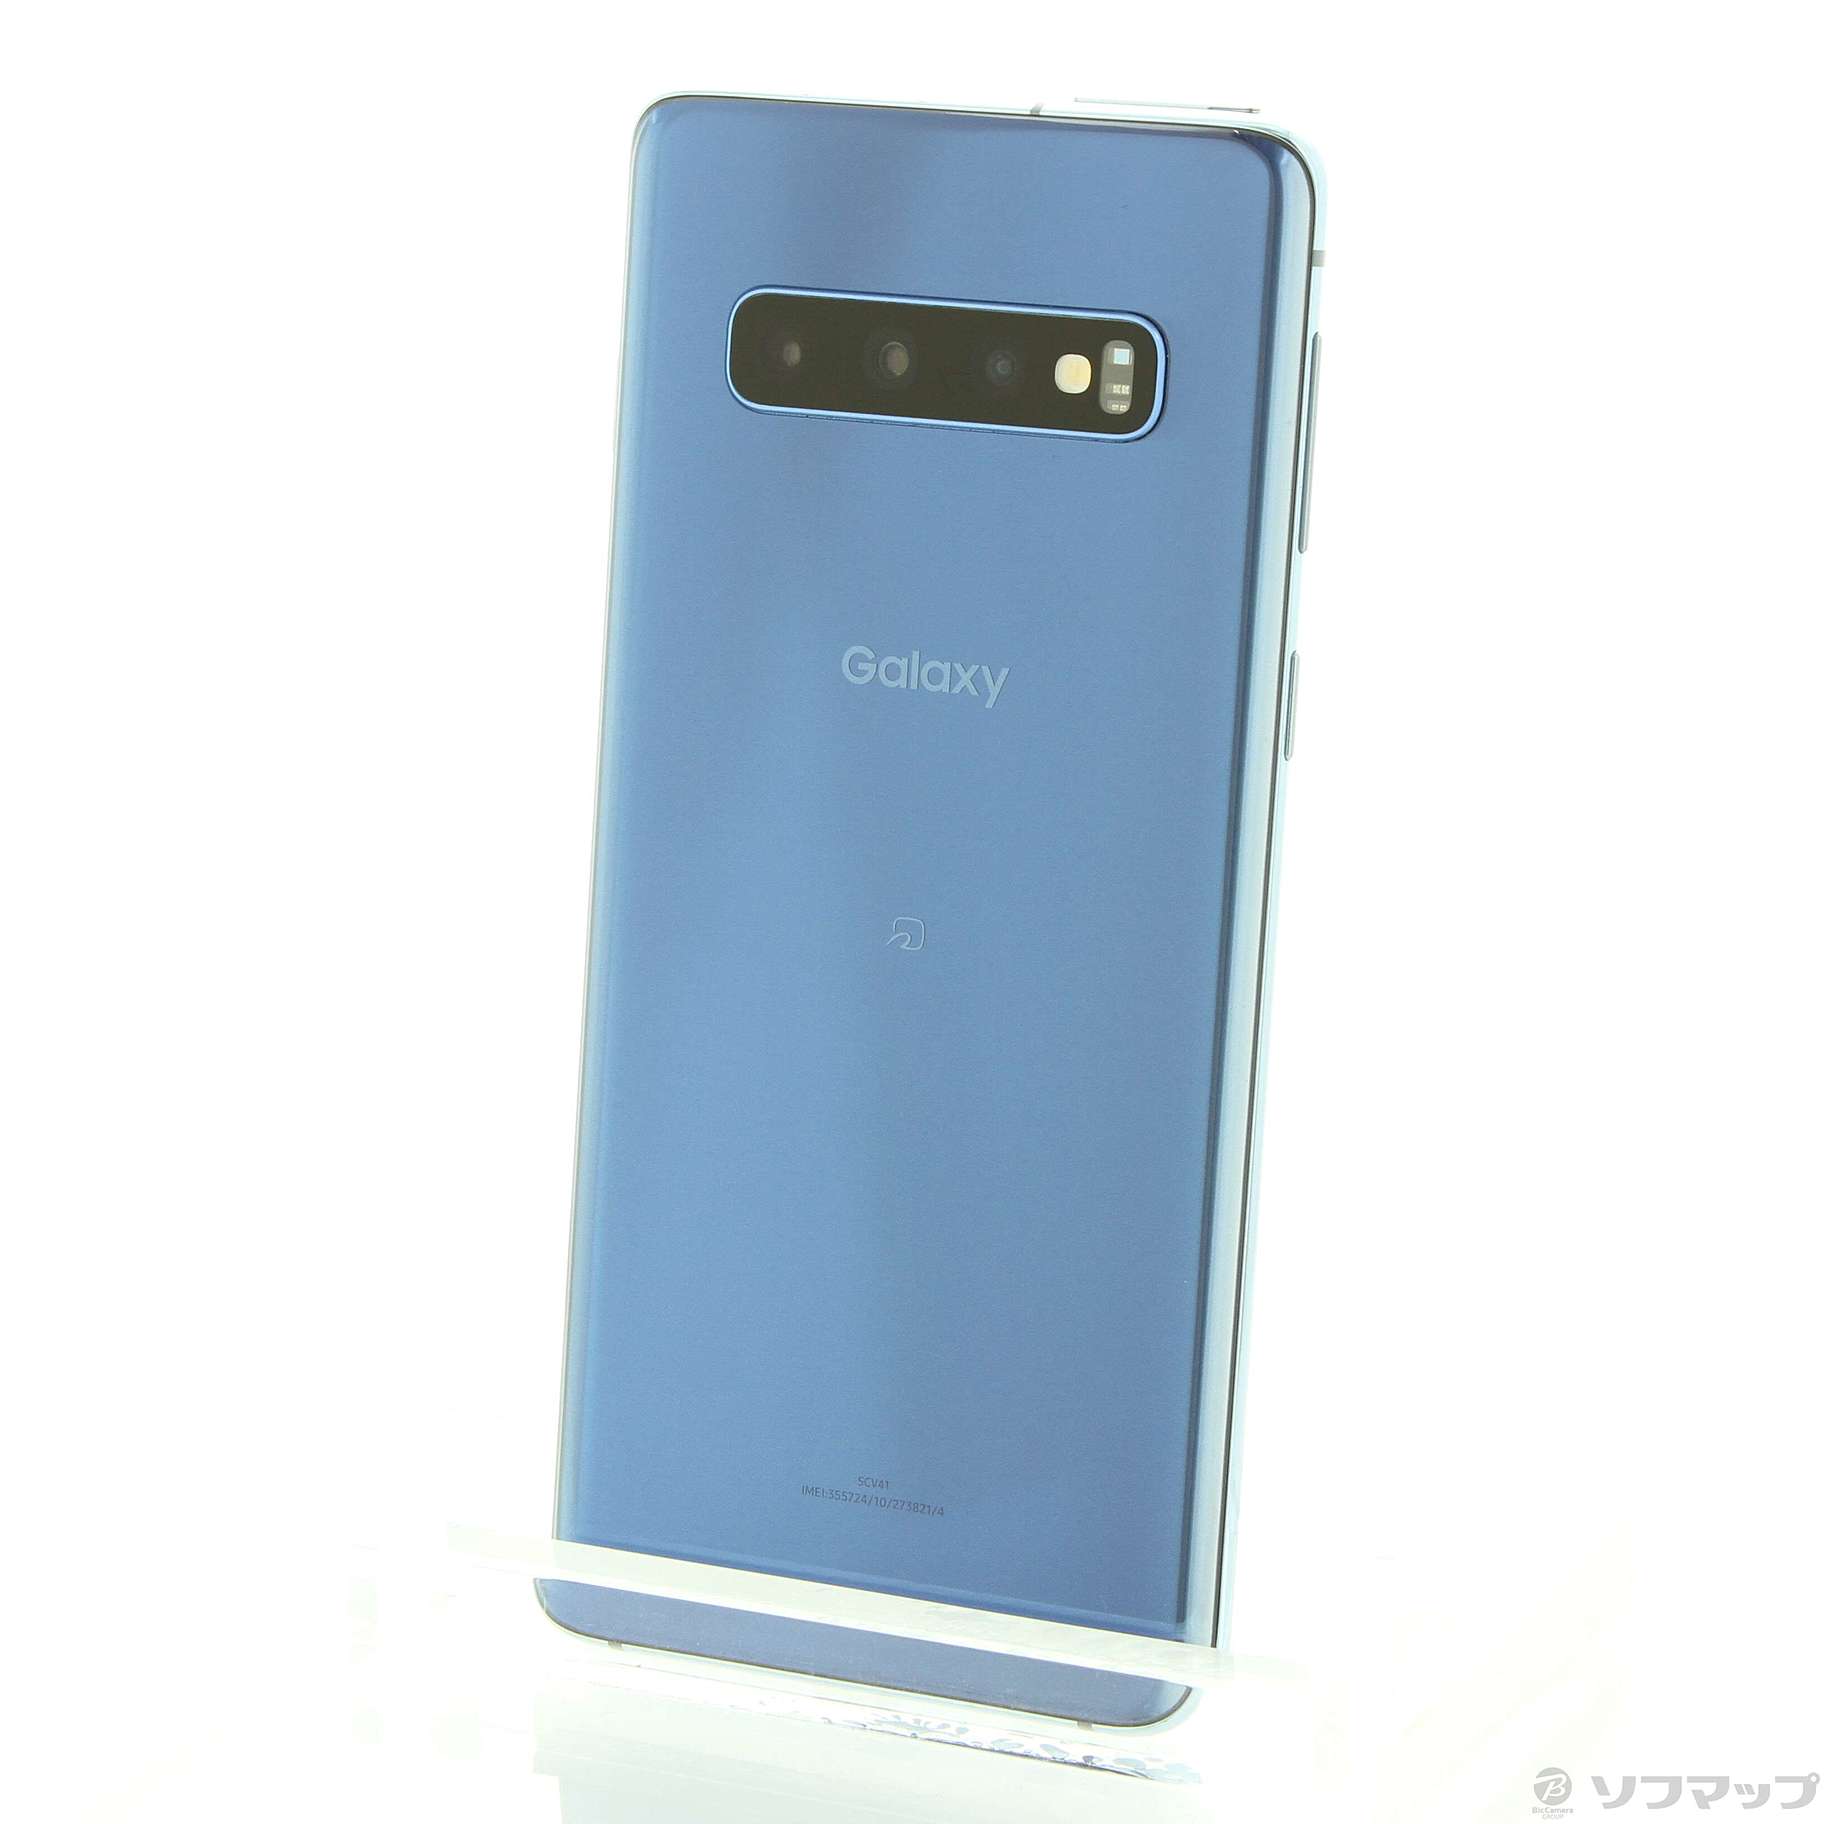 Galaxy S10 Prism blue 128GB au SIMフリー - rehda.com